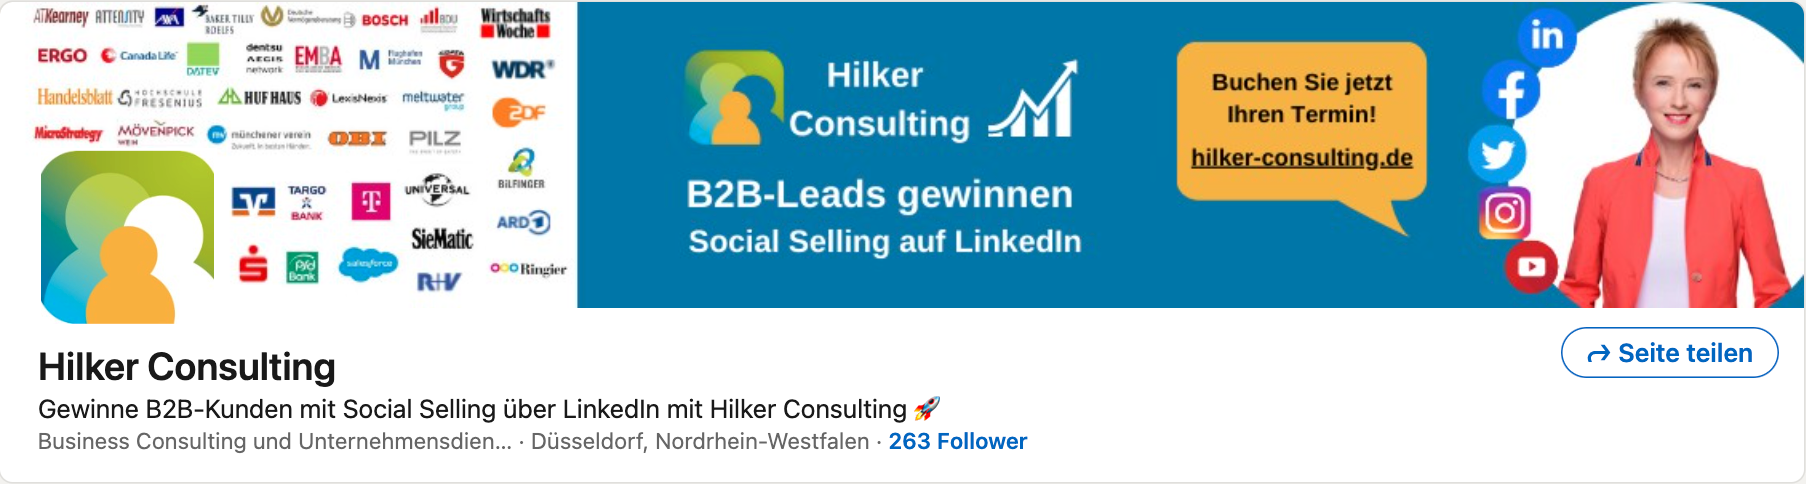 LinkedIn-Hilker-Consulting